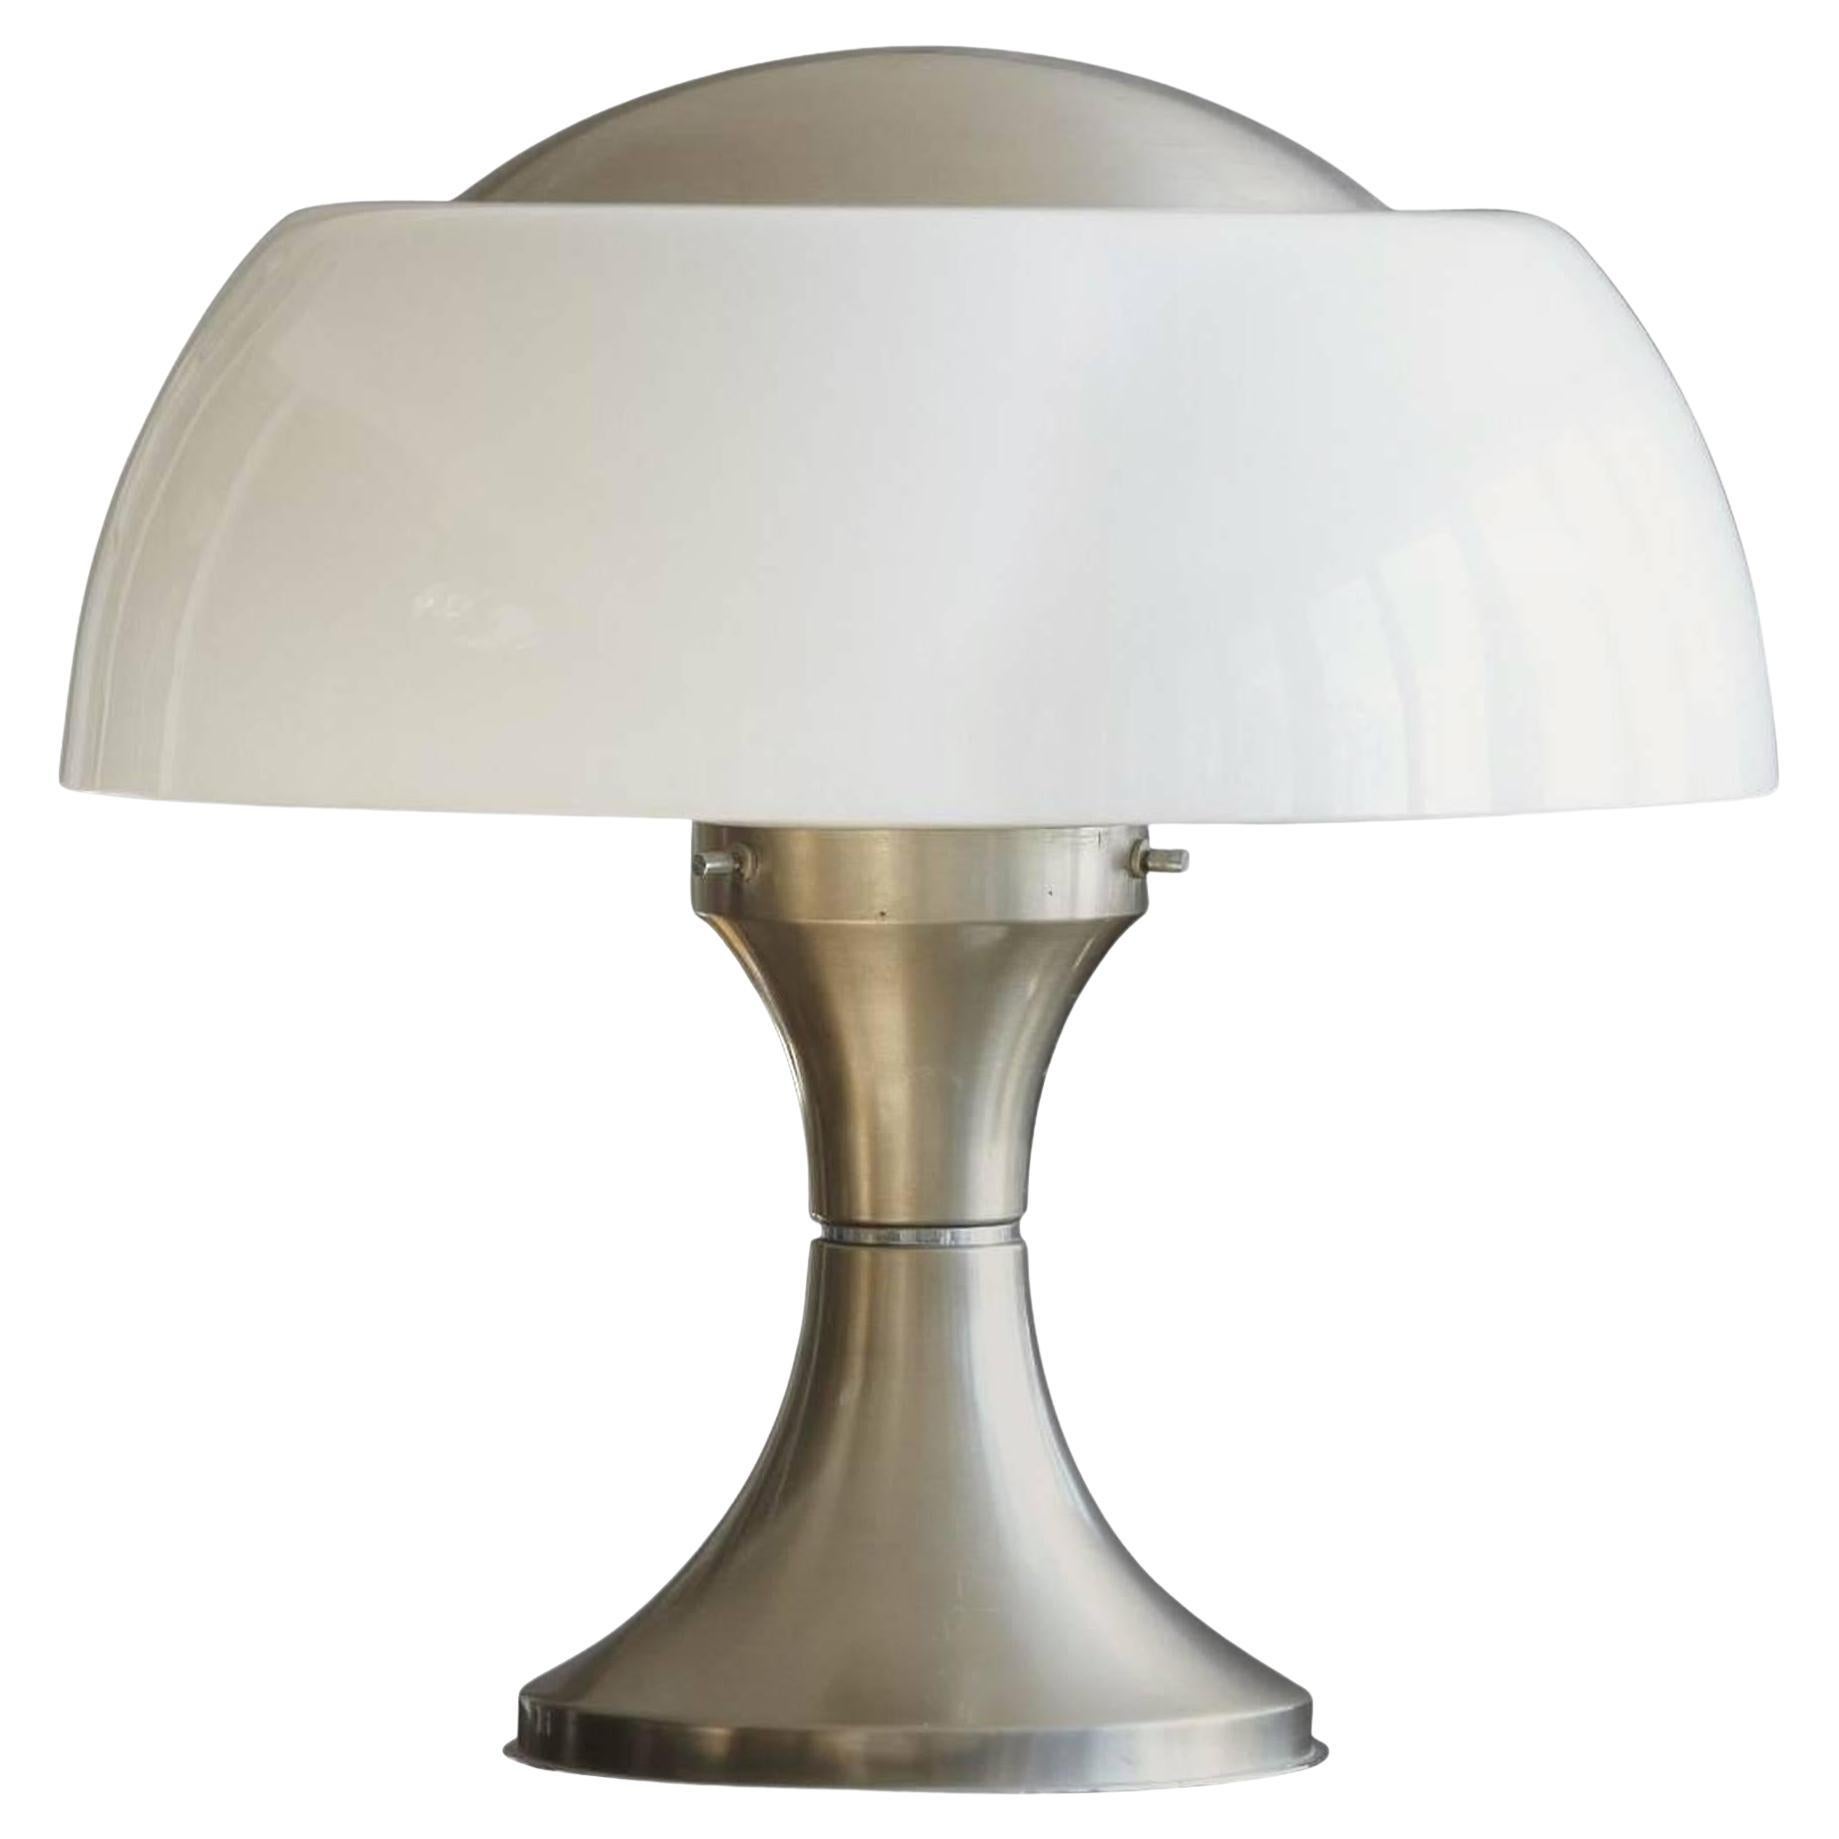 Gaetano Sciolari Table Lamp "Home" for Ecolight Formerly Valenti, 1968